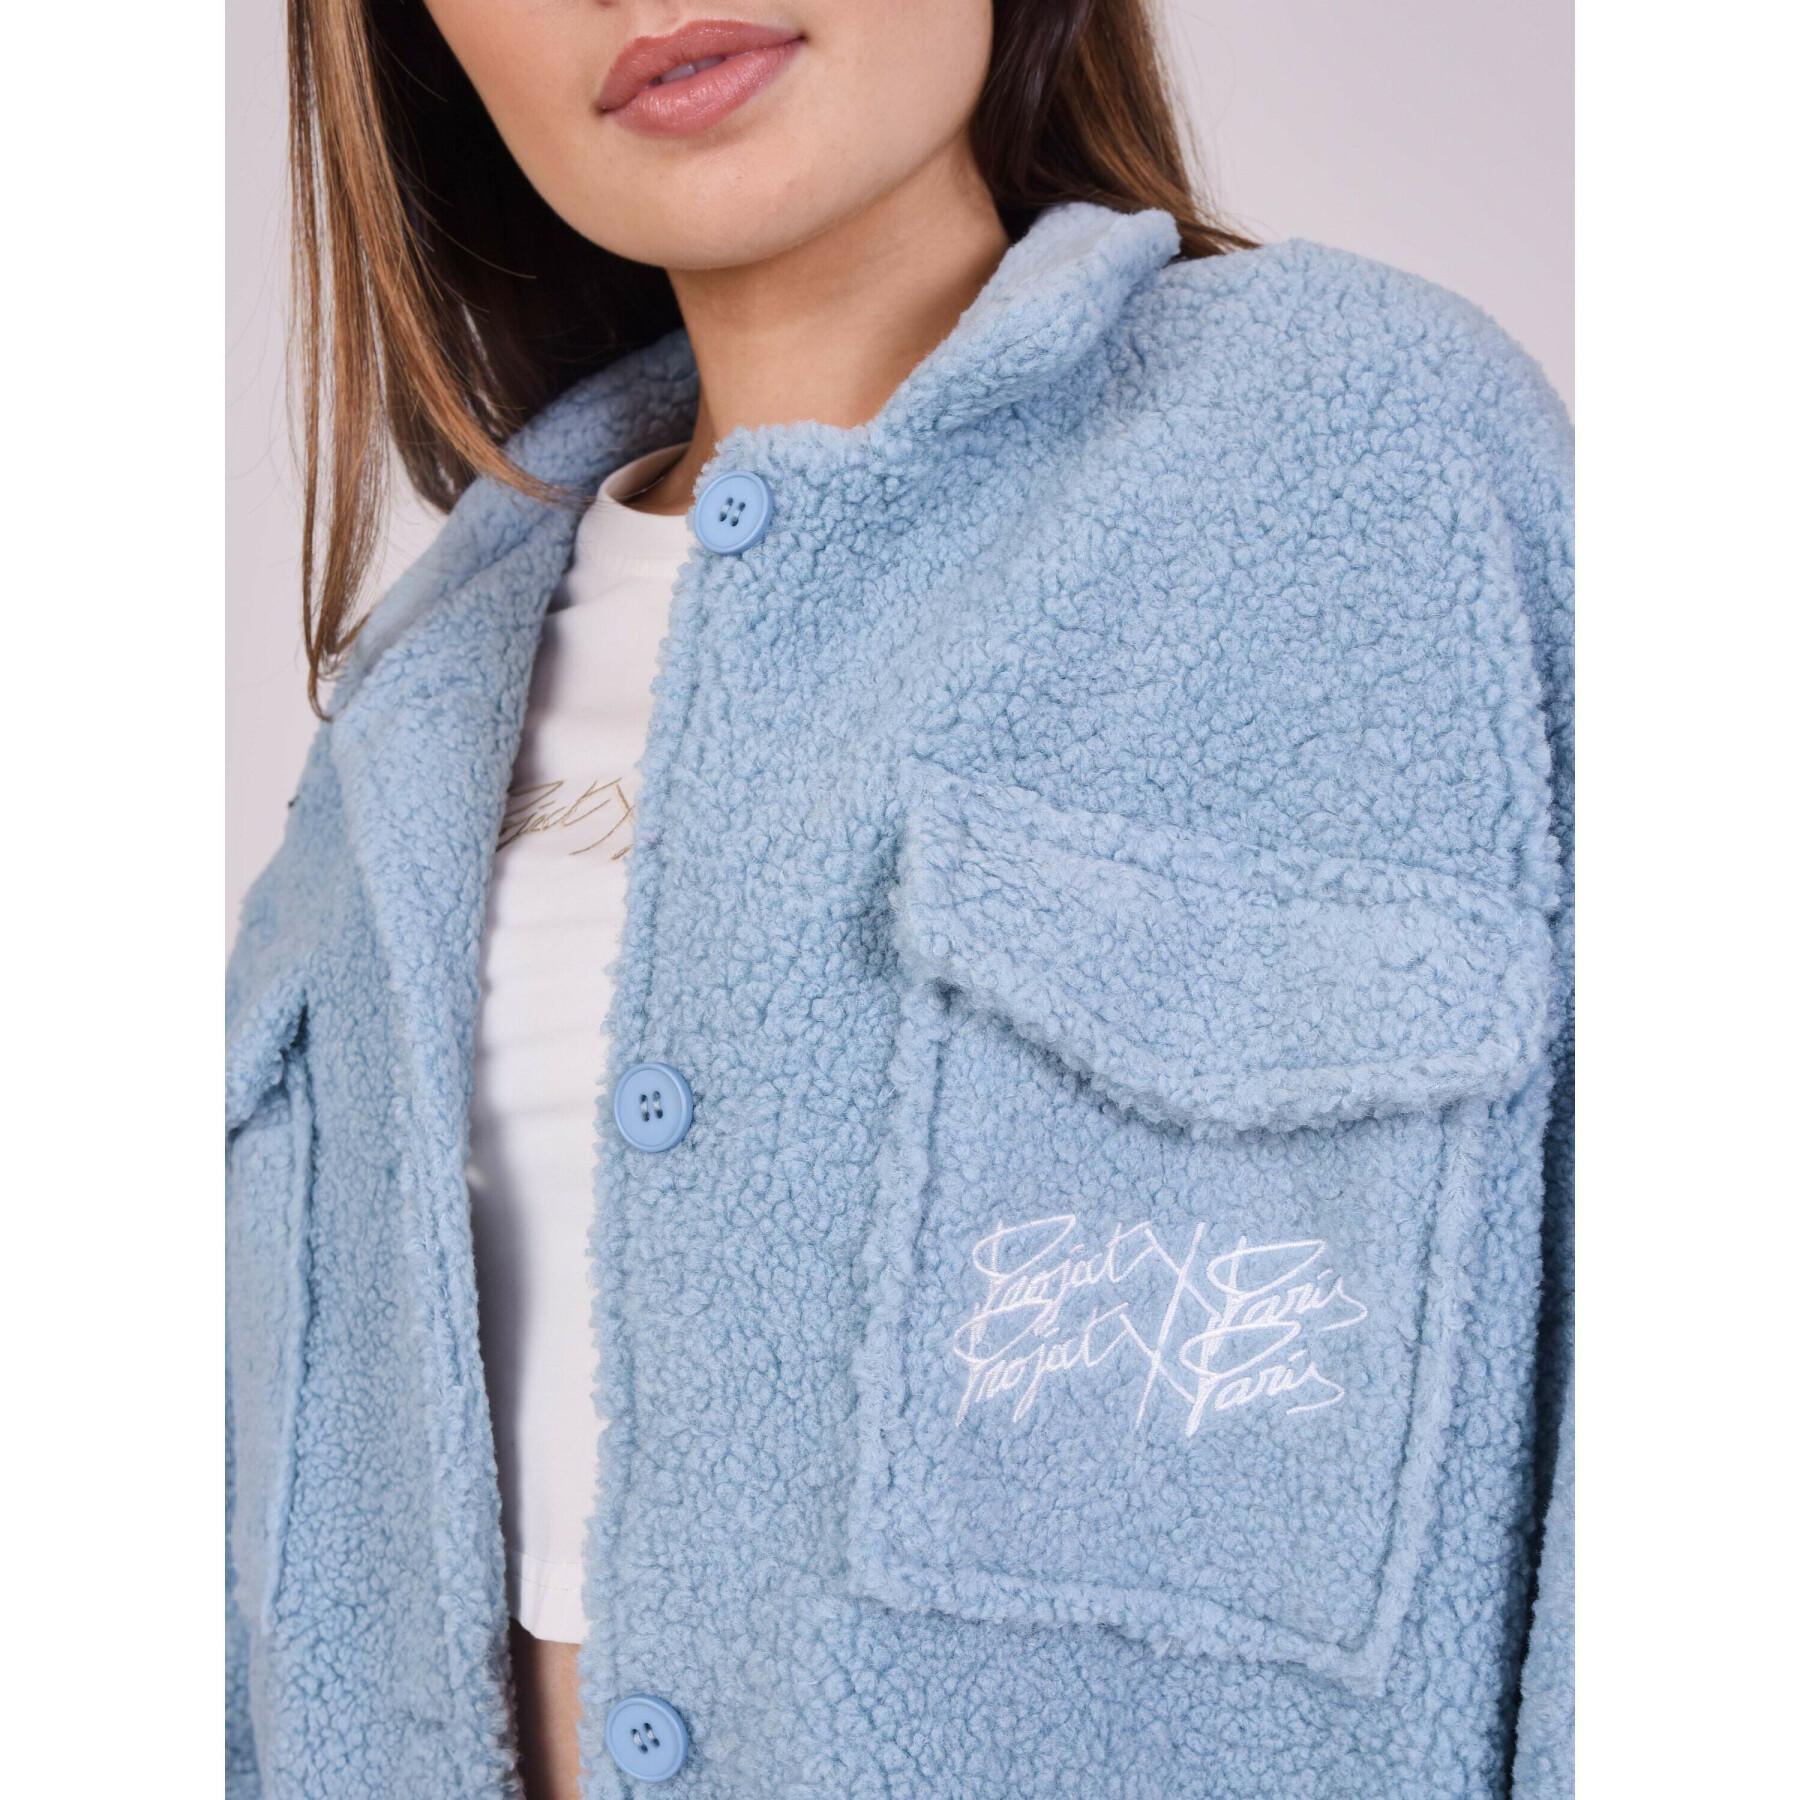 Women's basic pilou overshirt jacket Project X Paris